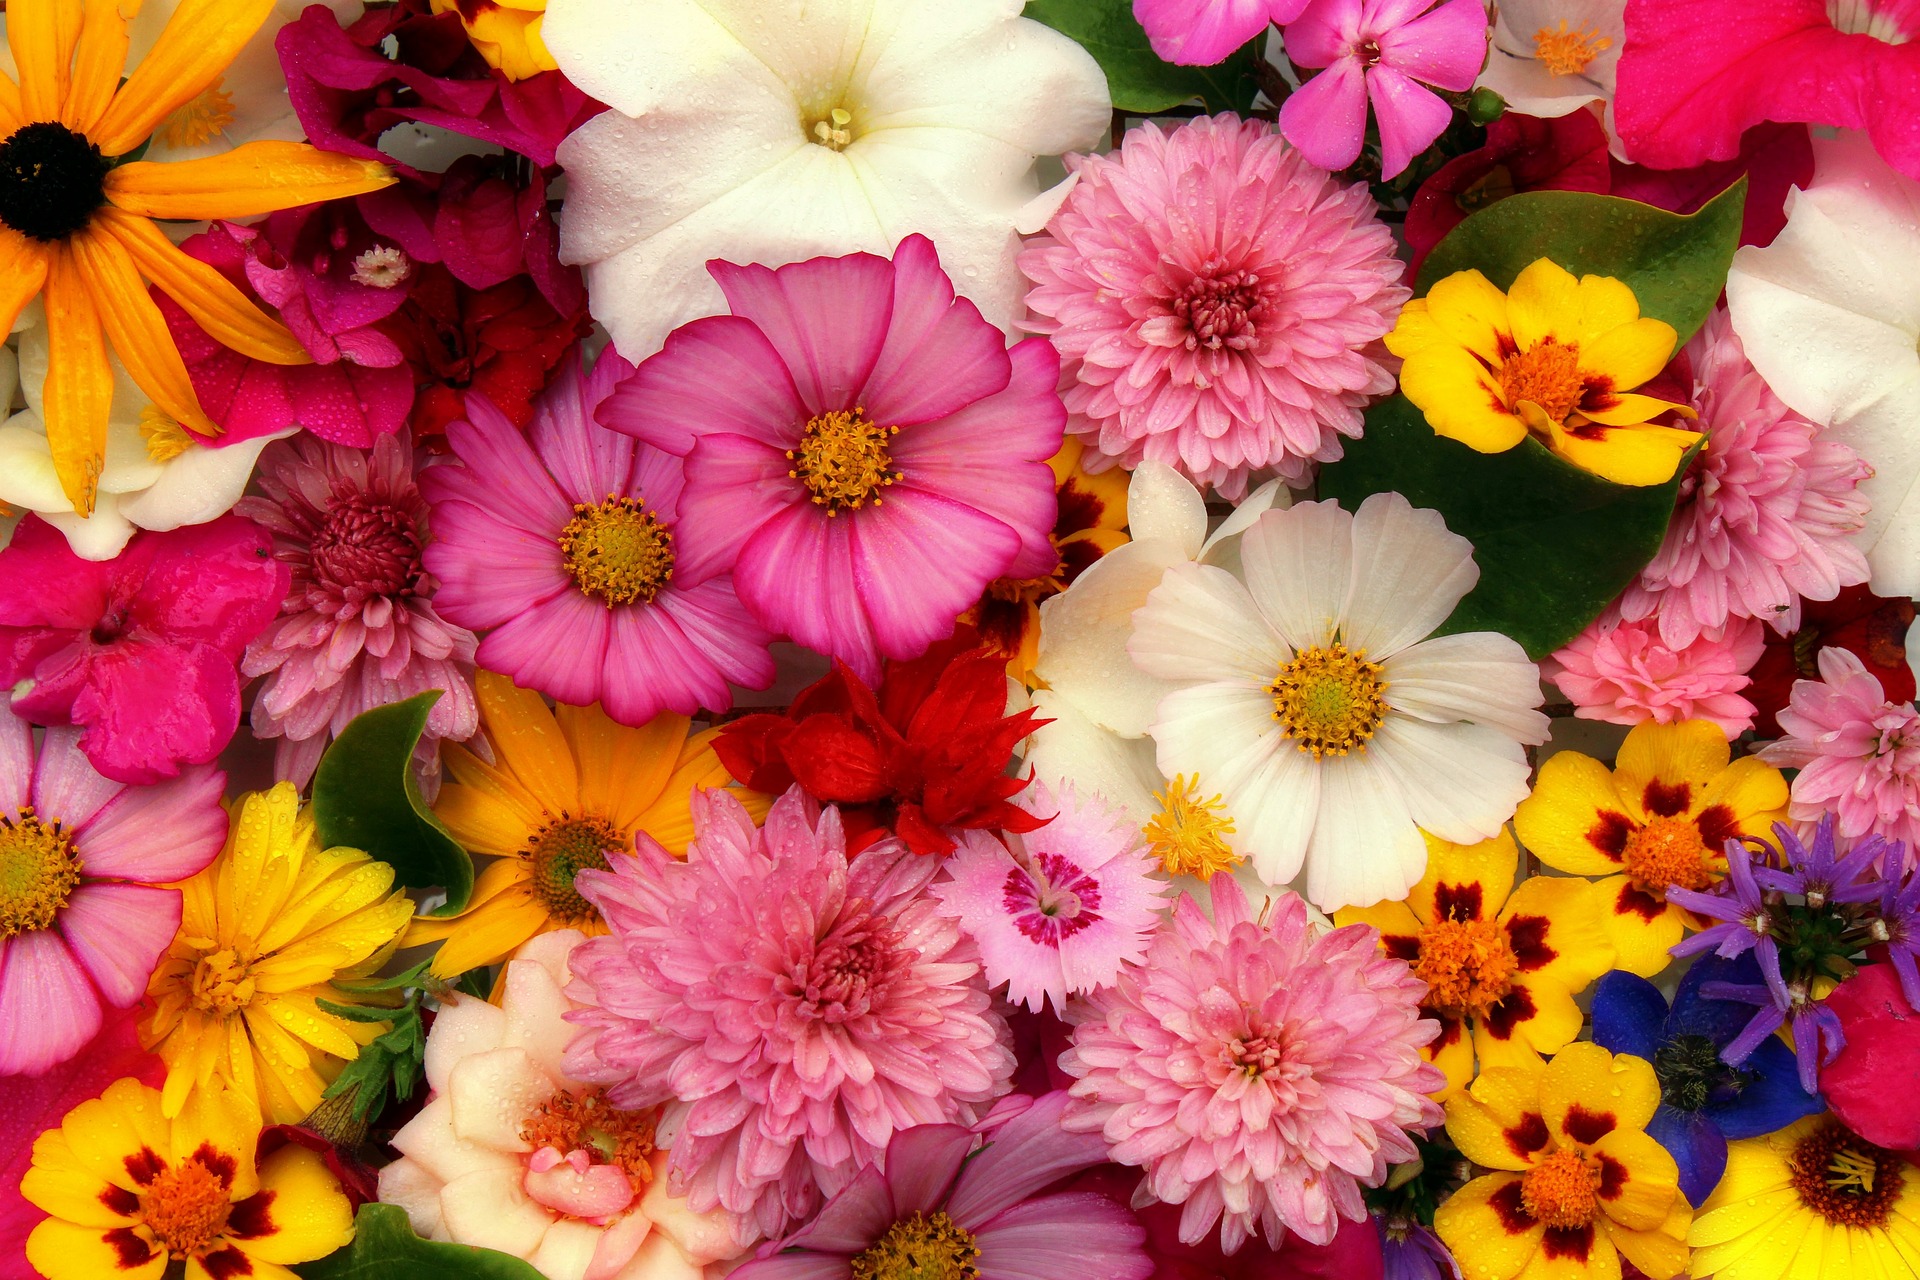 Colorful flower arrangement